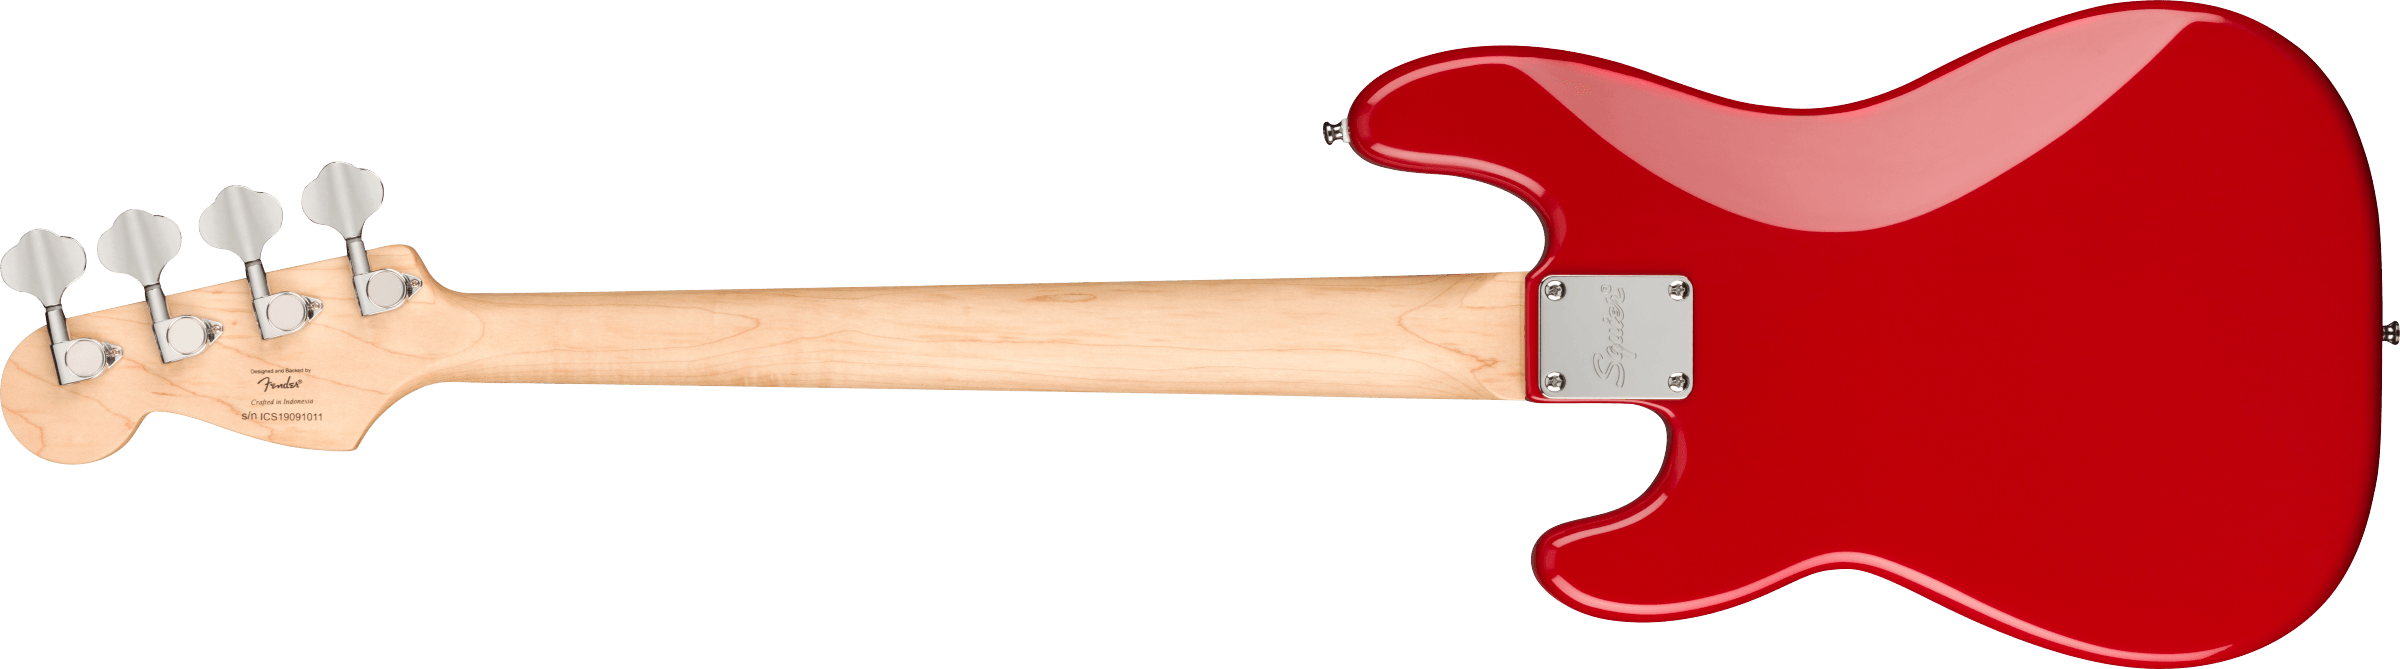 Squier Mini Precision Bass, Laurel Fb, Dakota Red